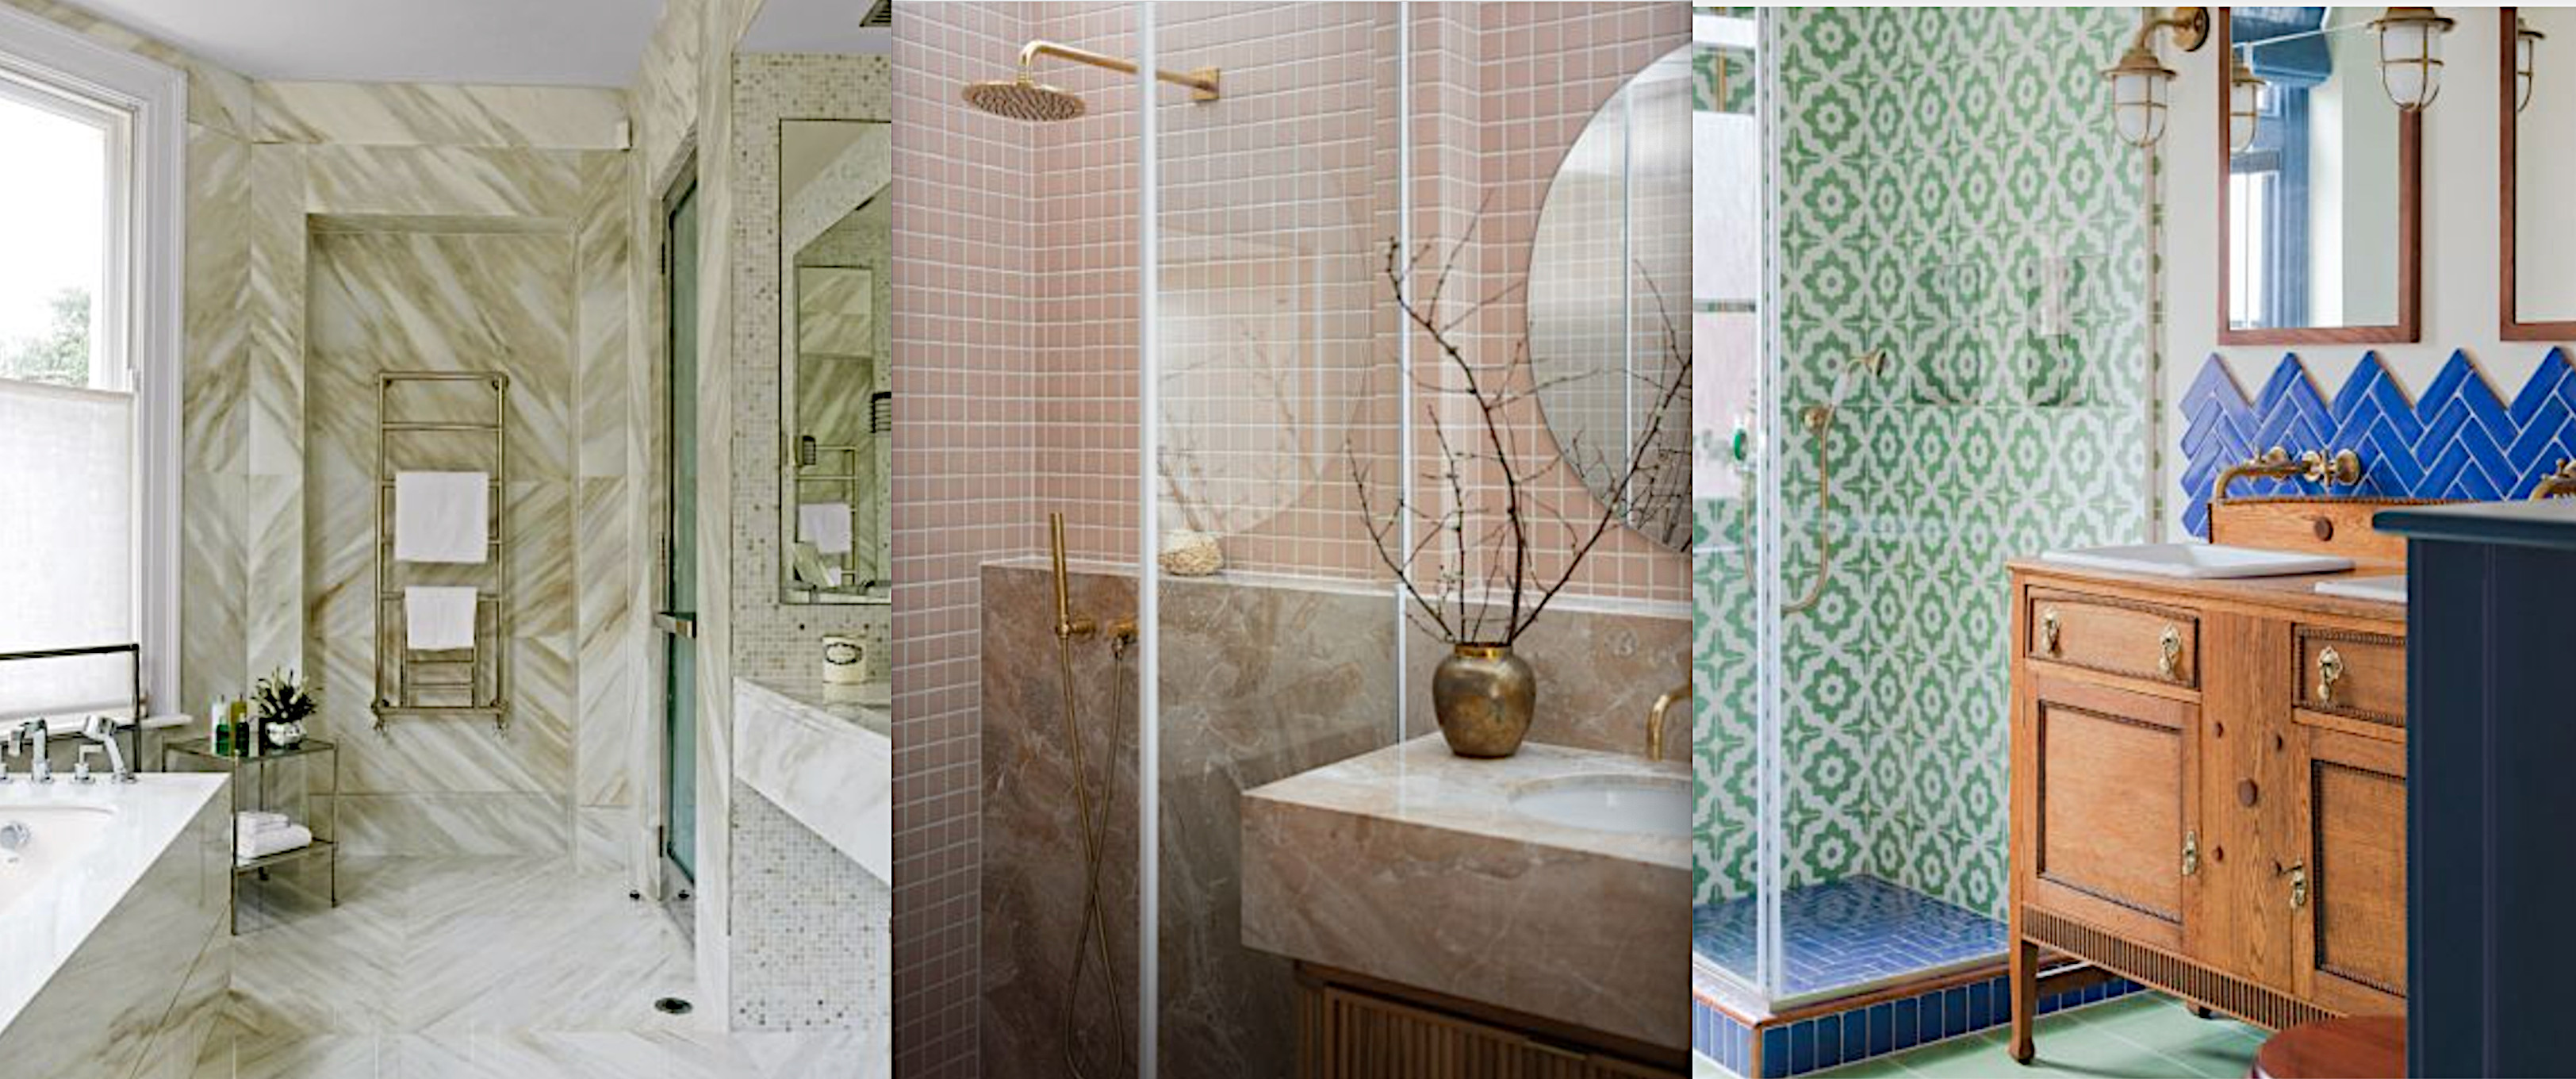 Small bathroom tile ideas: 20 ways with small bathroom tiles |